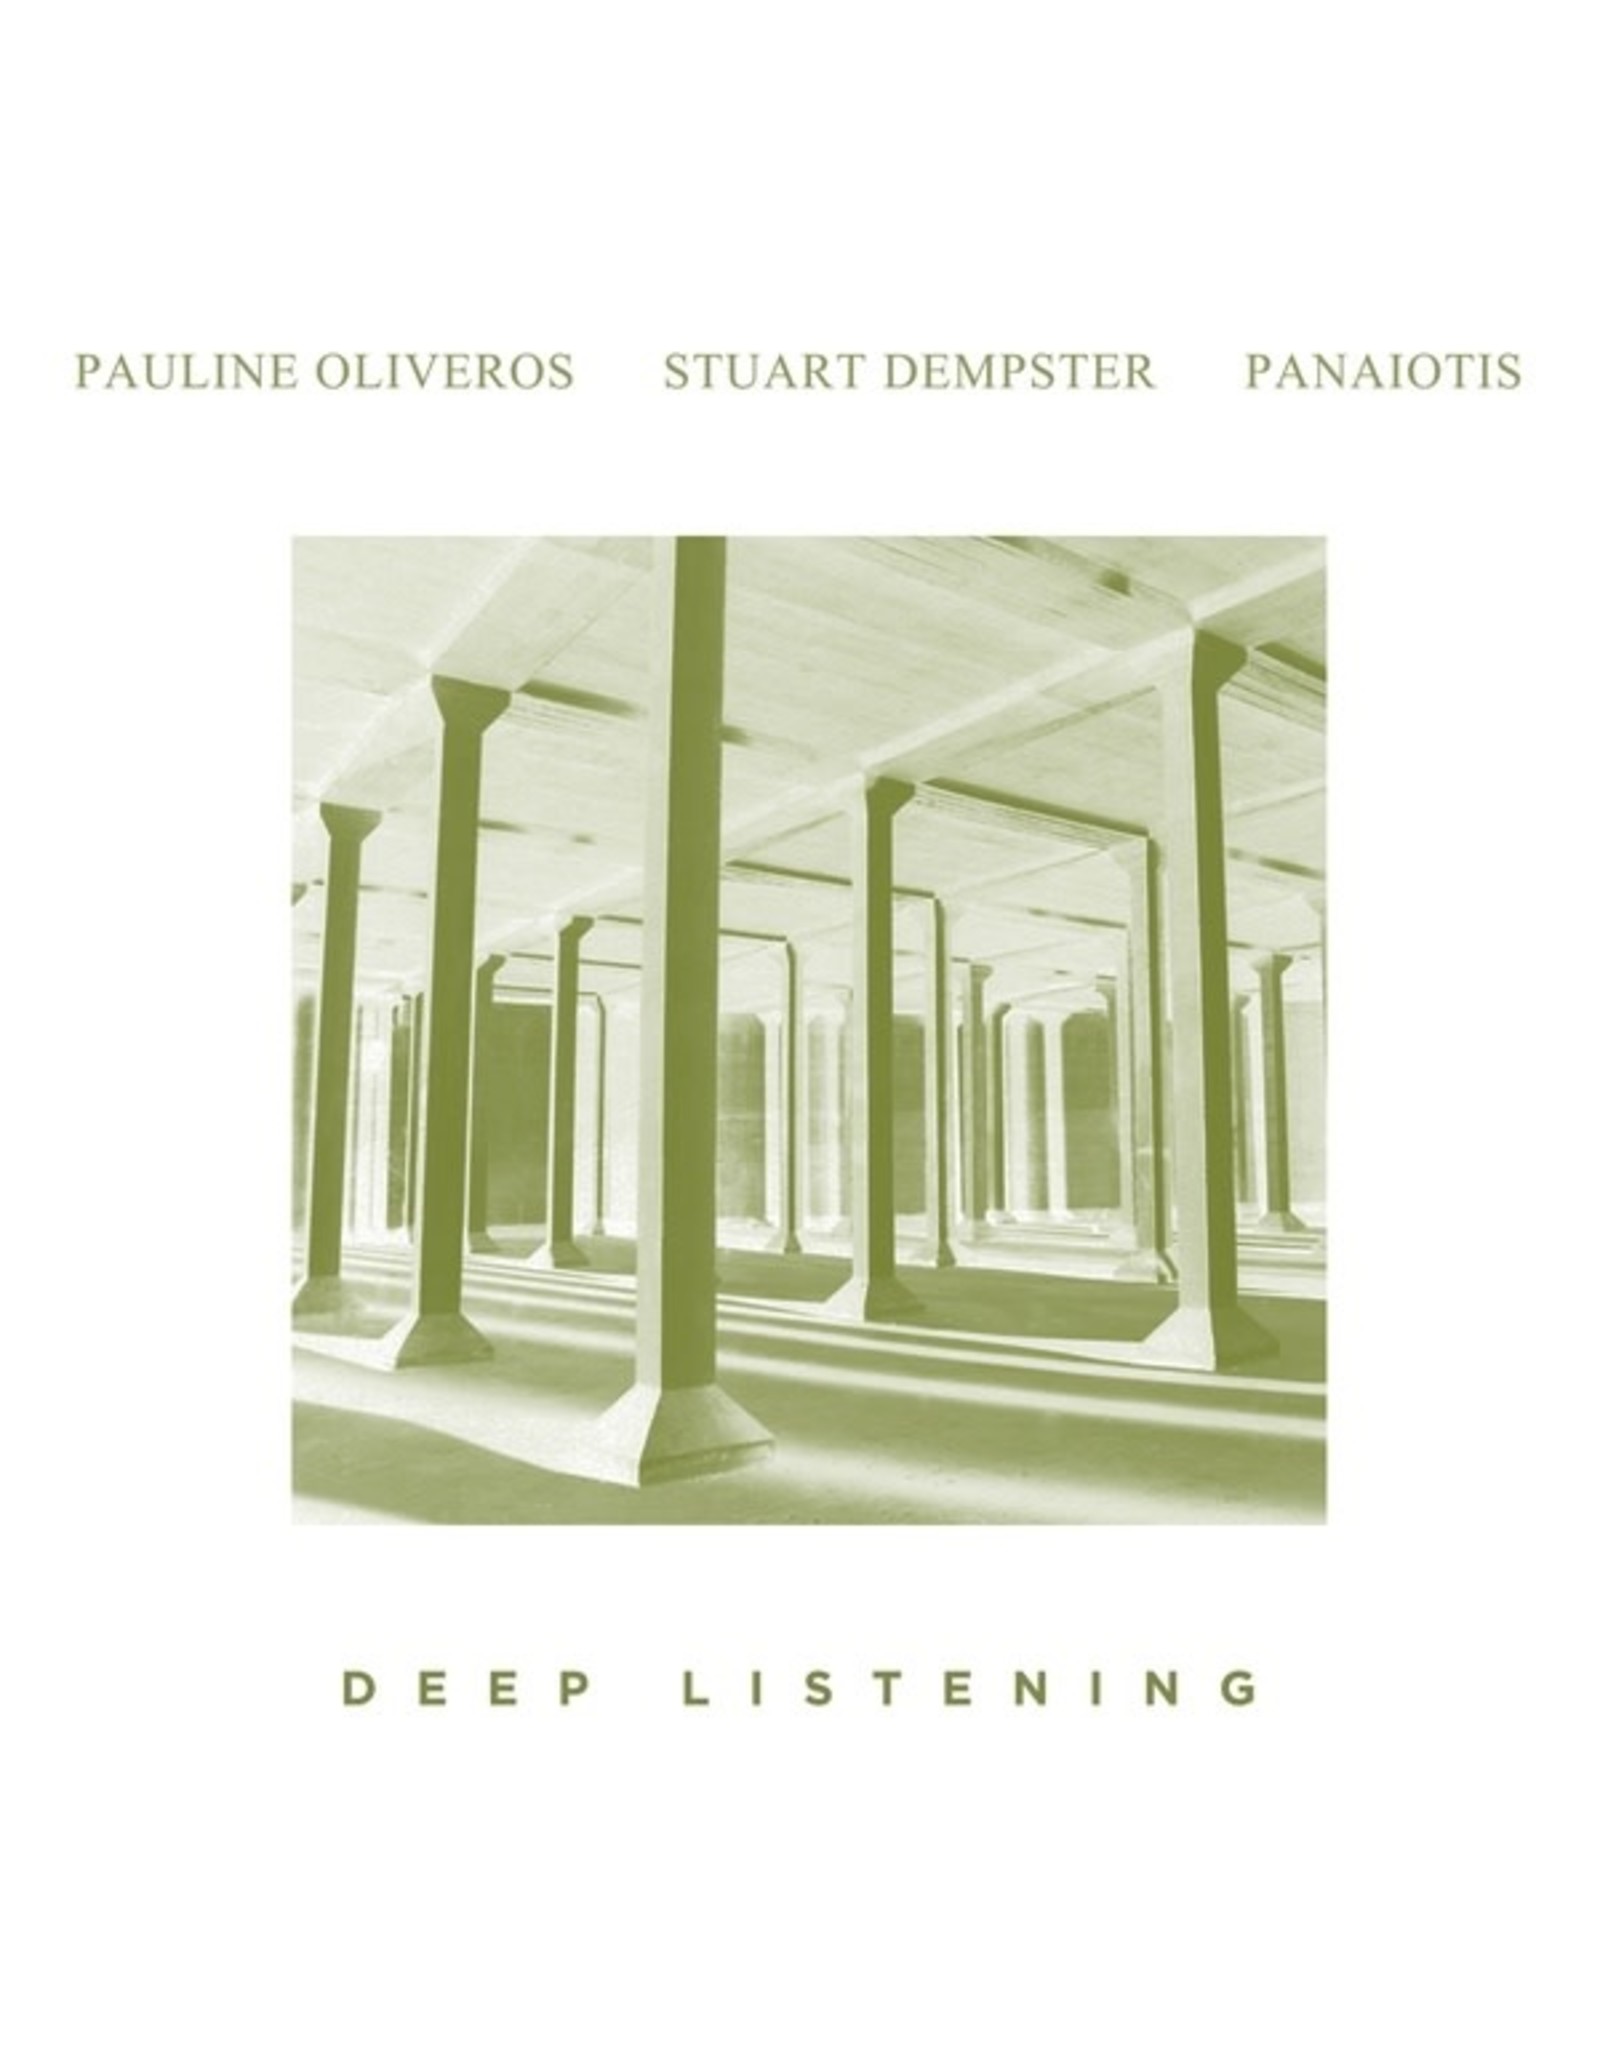 New Vinyl Pauline Oliveros / Stuart Dempster / Panaiotis - Deep Listening 2LP